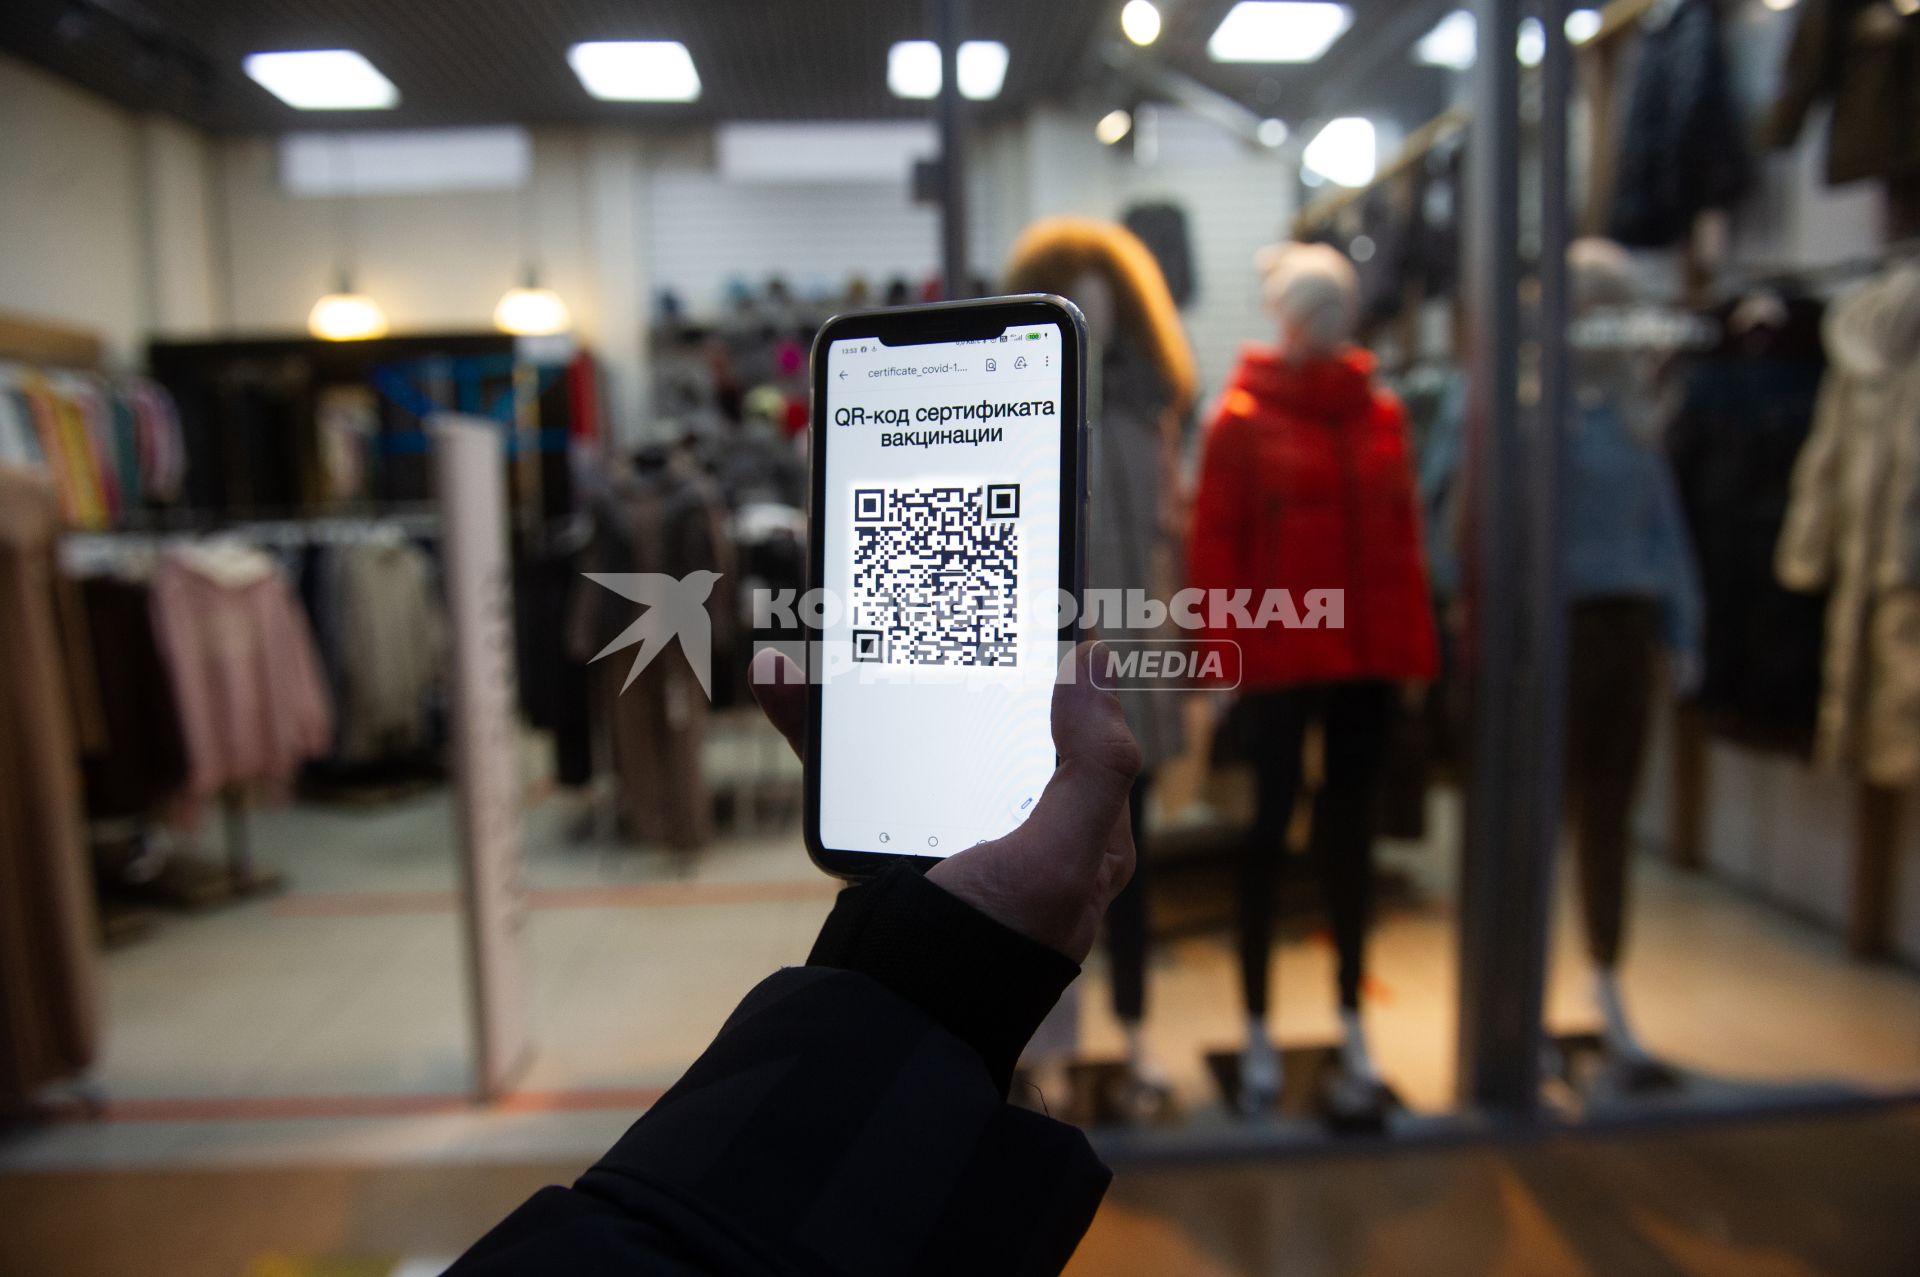 Санкт-Петербург. Юноша с мобильный телефоном, на экране которого отображен QR-код, идет по торговому центру.